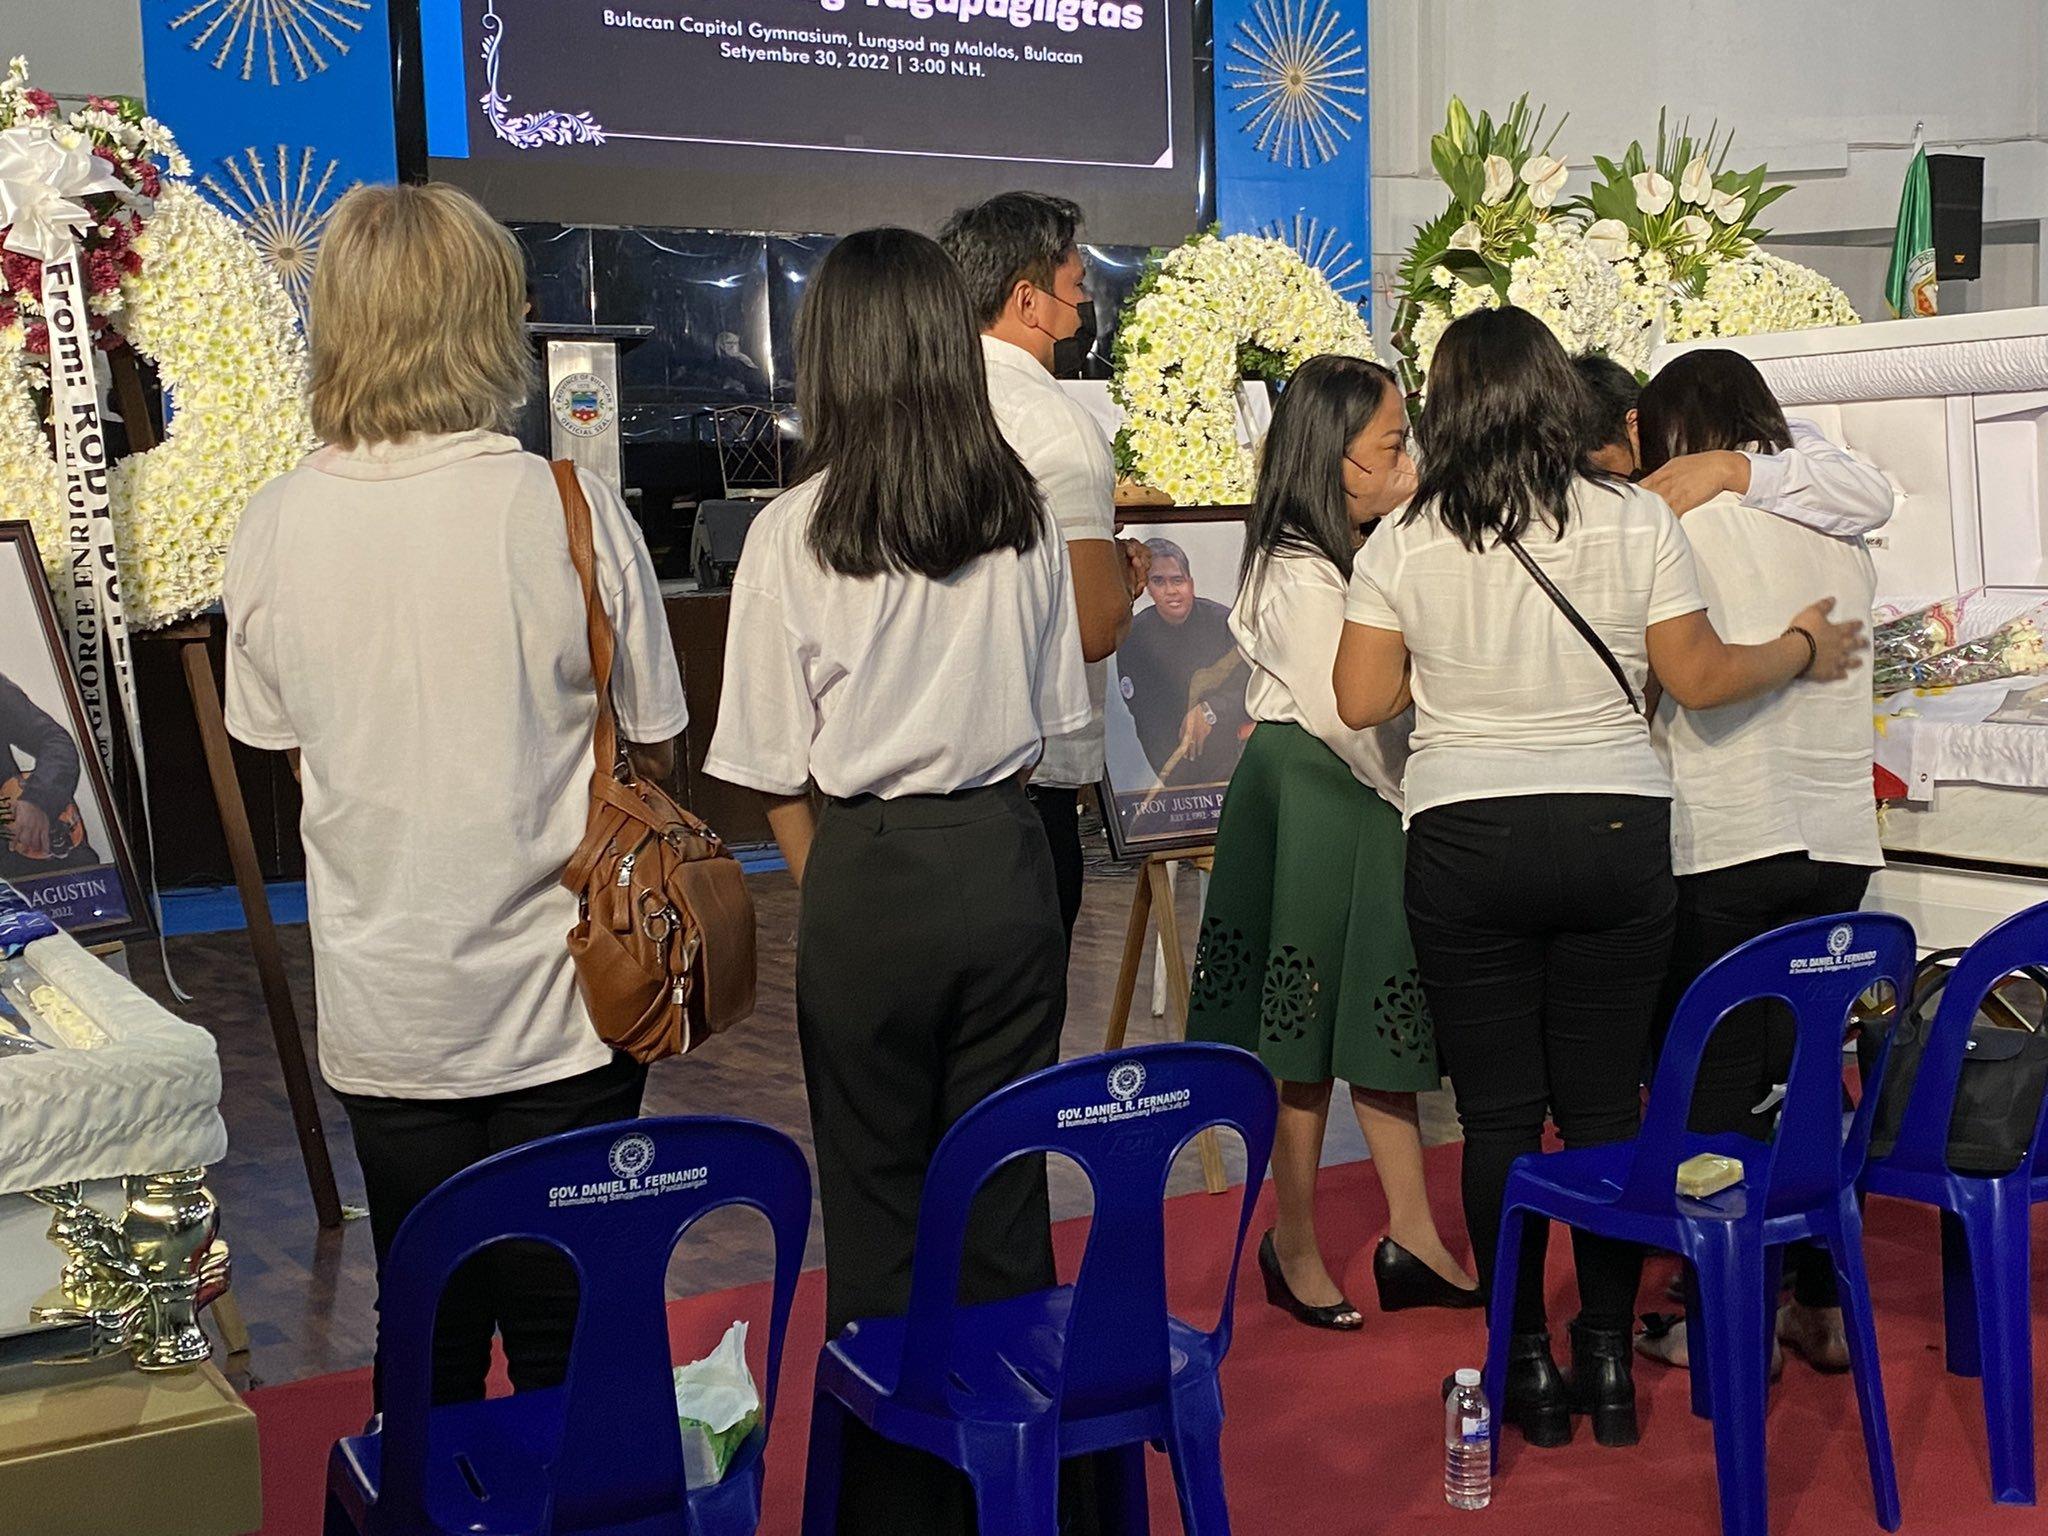 Keluarga, kolega, warga memberikan penghormatan khusus untuk penyelamat Bulacan yang gugur GMA News Online